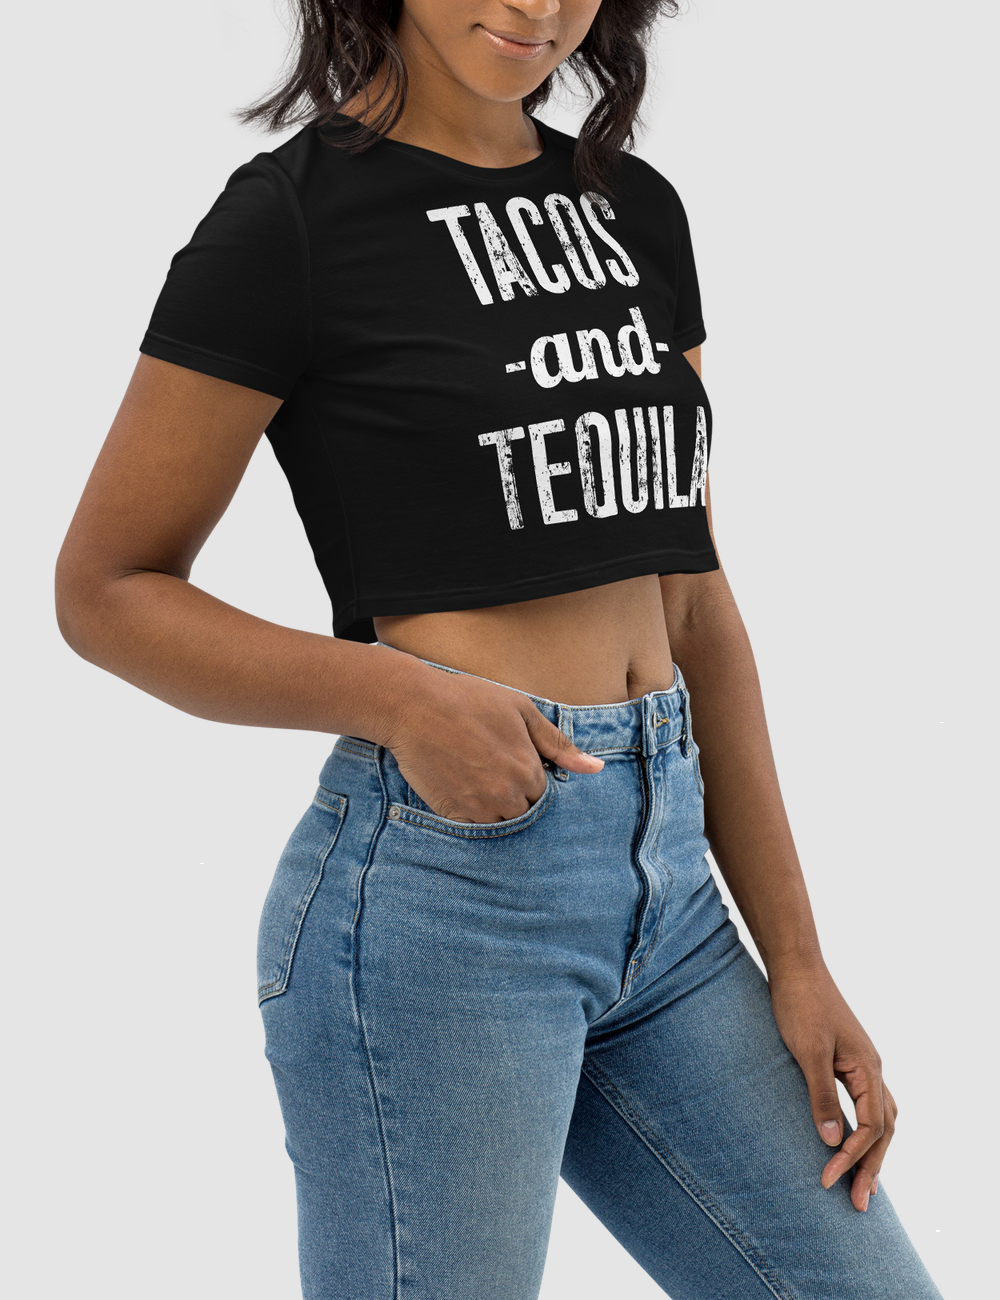 Tacos And Tequila | Women's Crop Top T-Shirt OniTakai